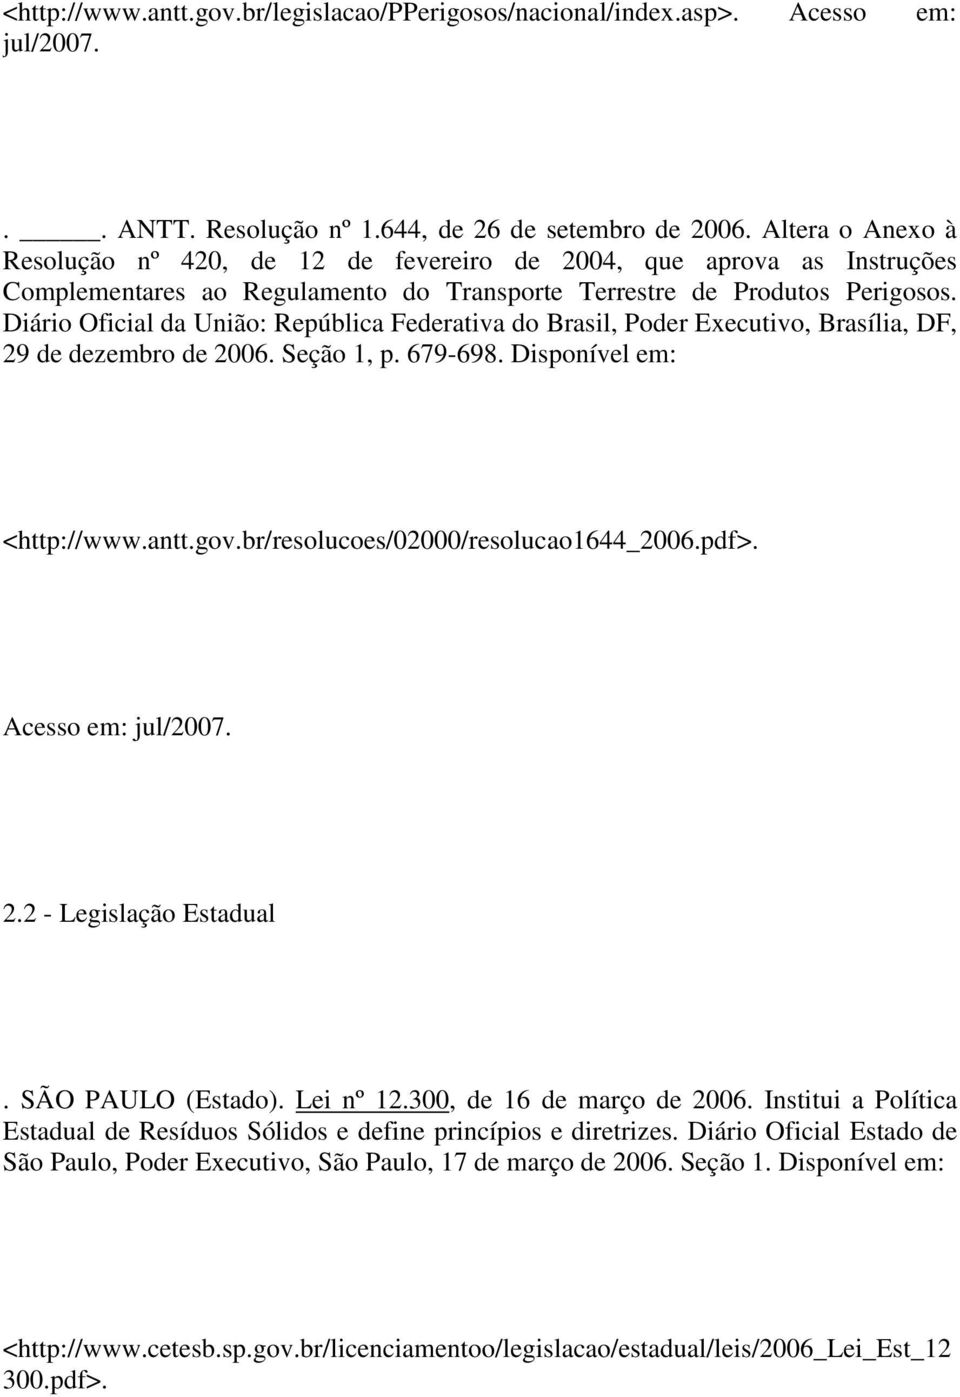 Diário Oficial da União: República Federativa do Brasil, Poder Executivo, Brasília, DF, 29 de dezembro de 2006. Seção 1, p. 679-698. Disponível em: <http://www.antt.gov.